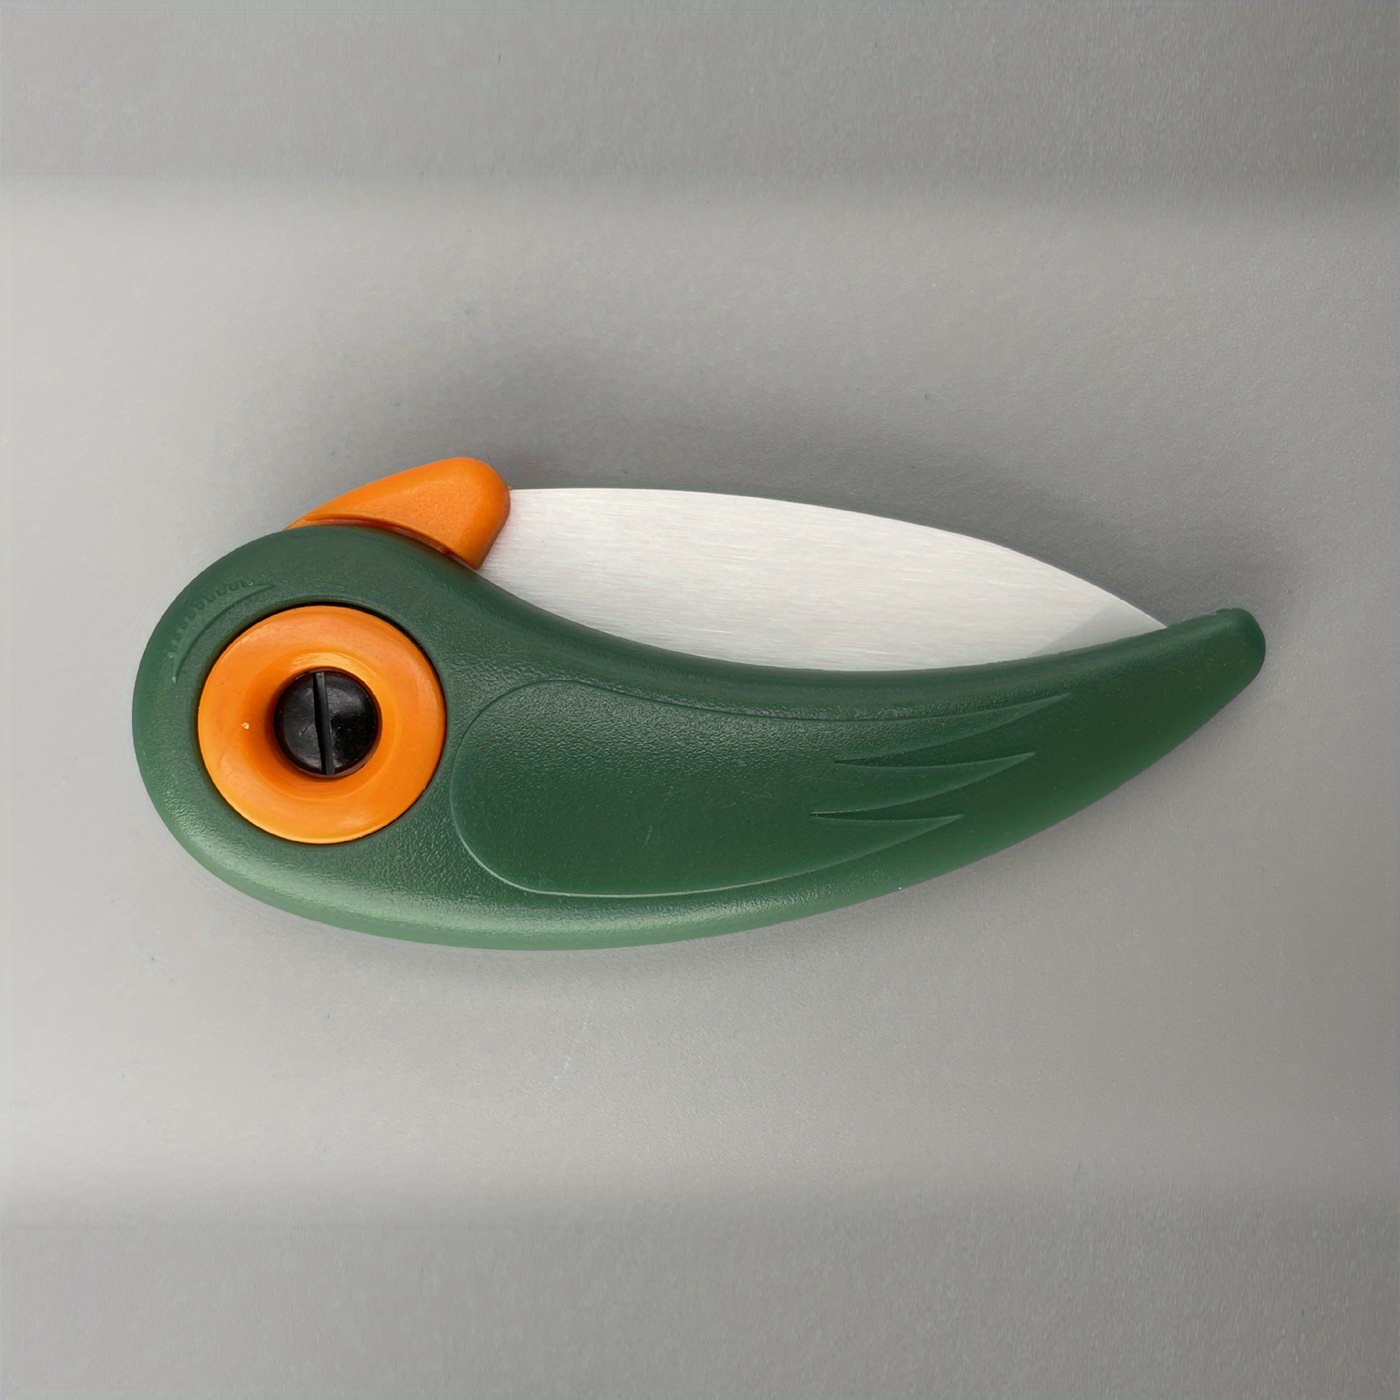 Mini Bird Ceramic Knife Gift Knife Pocket Ceramic Folding Knives